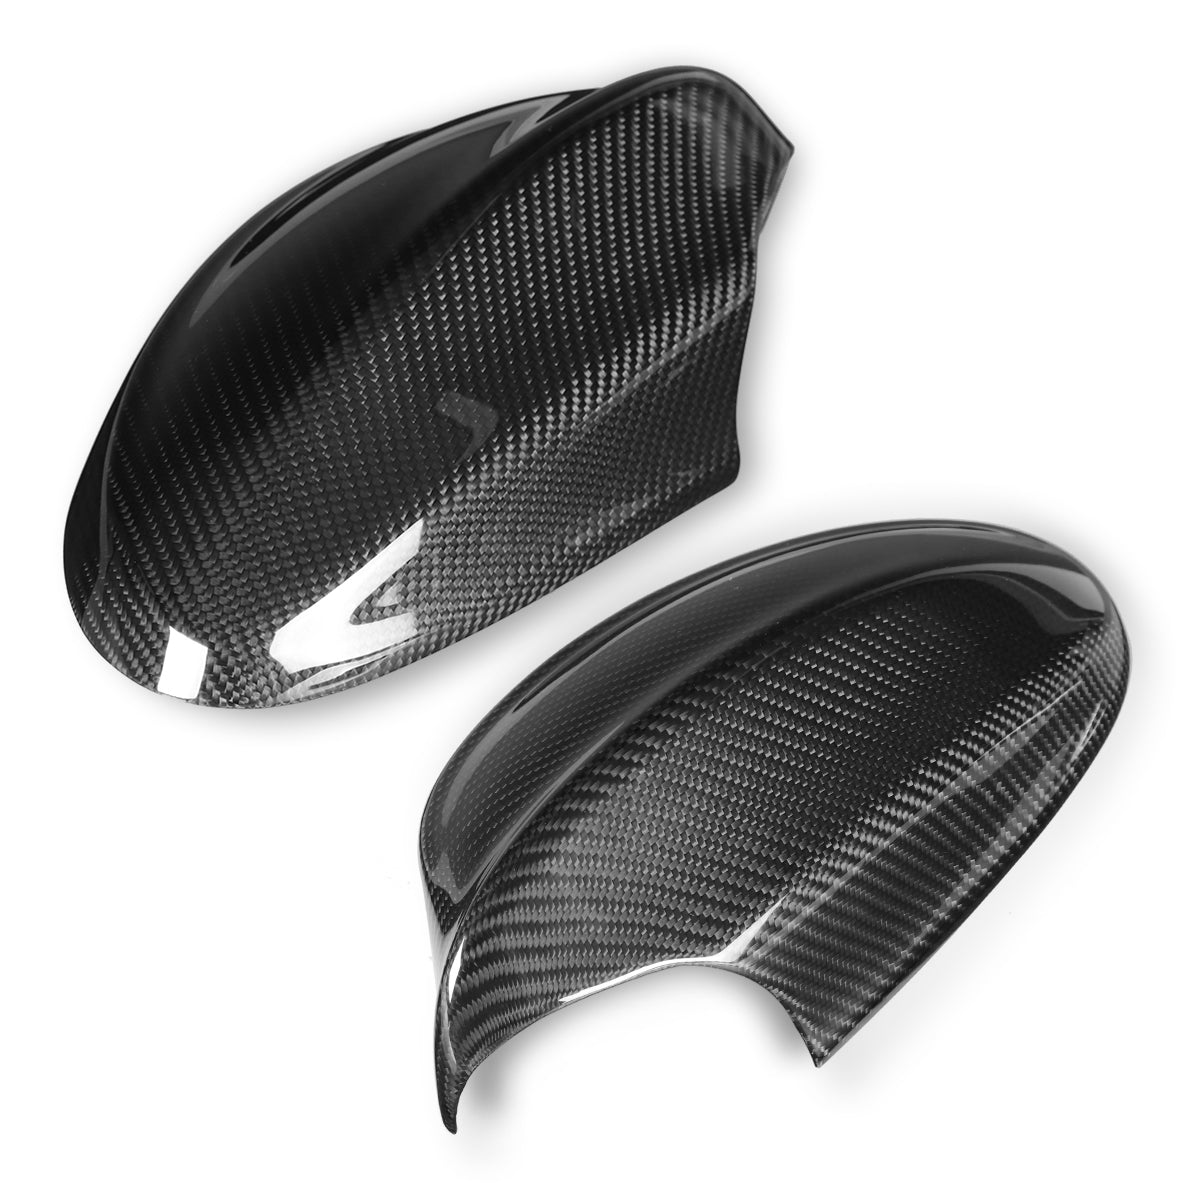 1 Pair Carbon Fiber Rearview Side Car Mirror Cover Caps For BMW Pre-facelift E90 2005-2008 - Auto GoShop